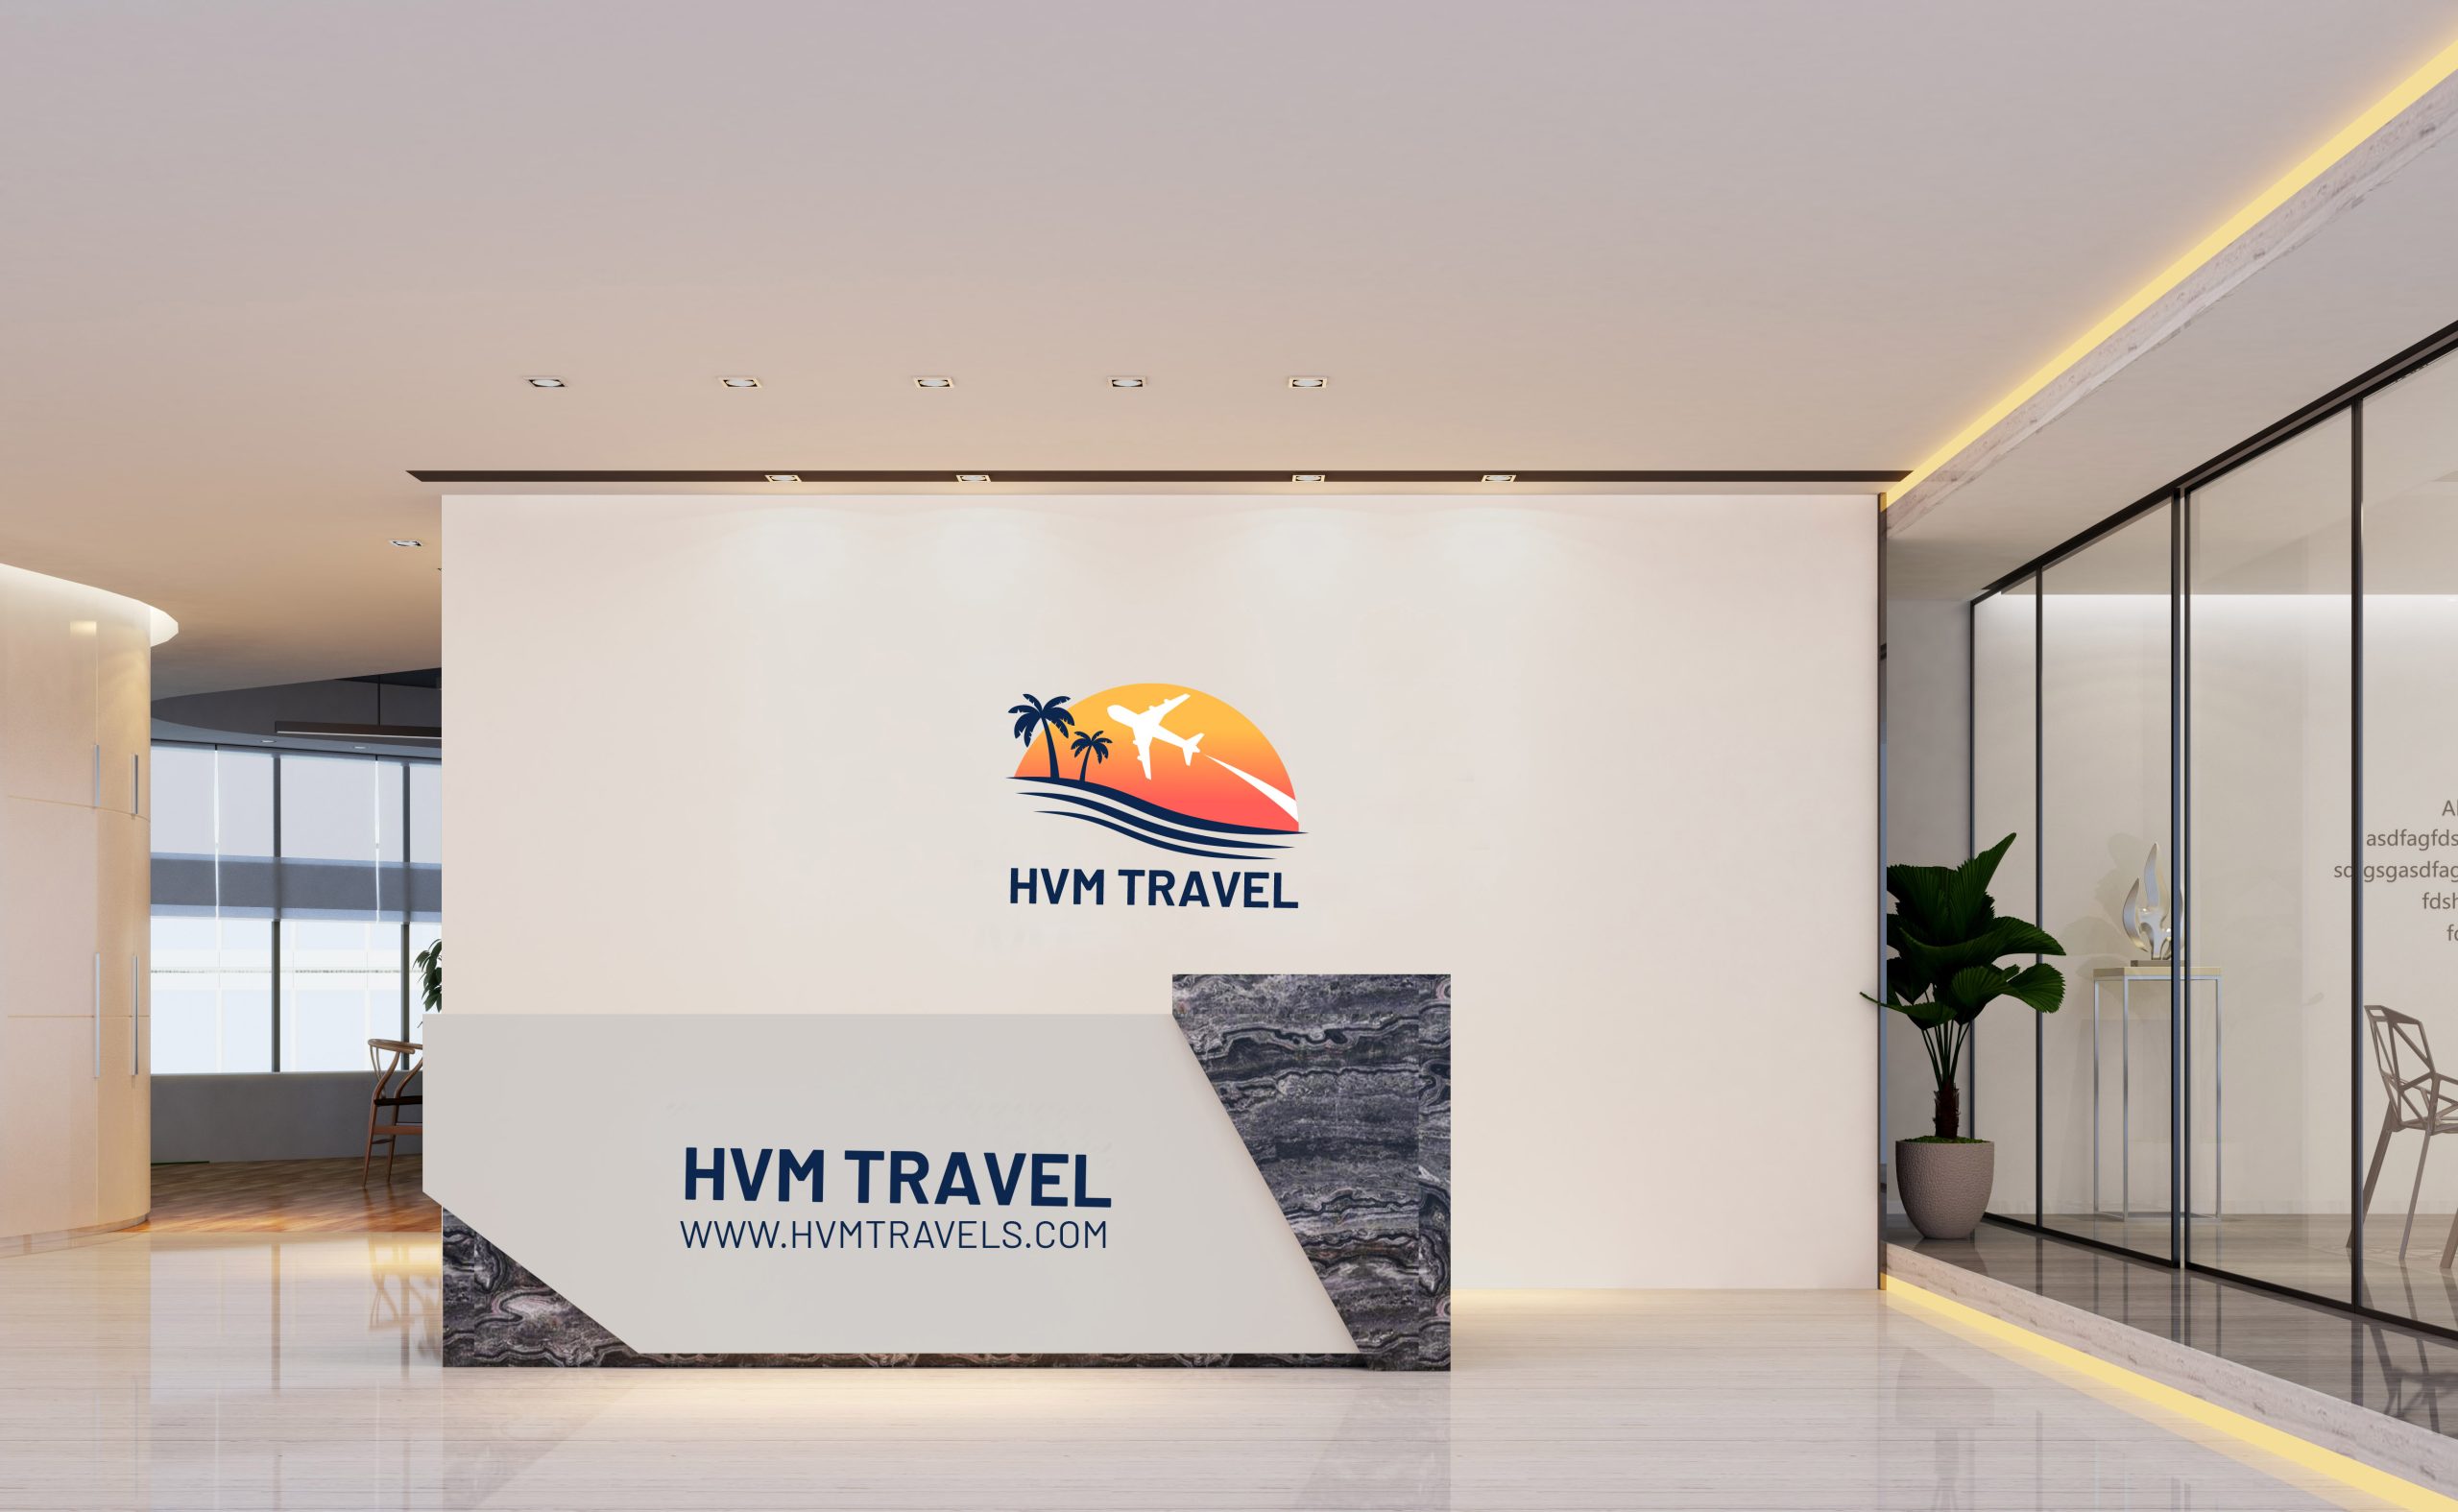 HVM Travel Reception Sign